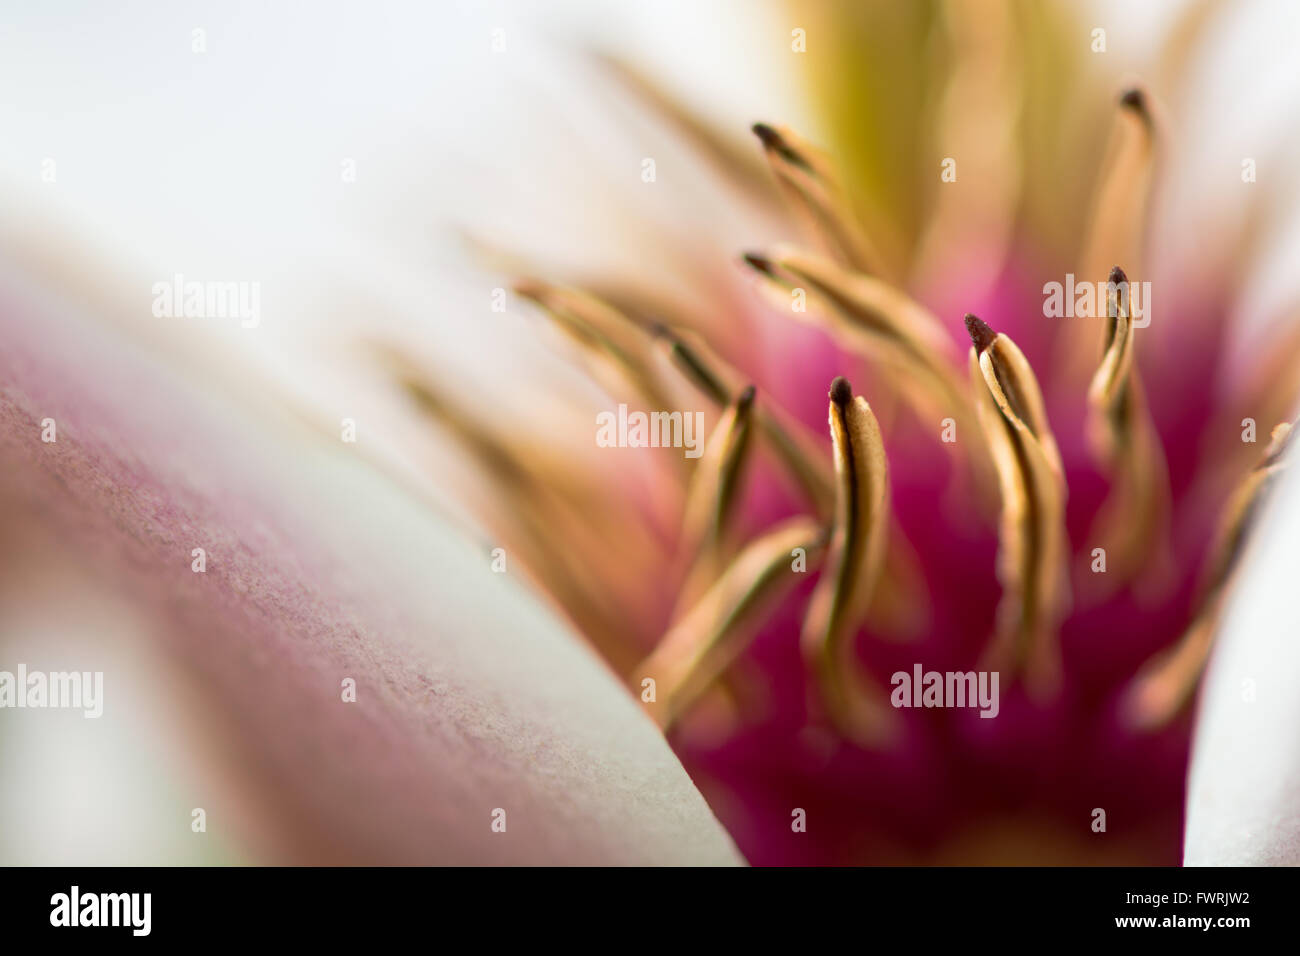 Fiore di Magnolia close up mostra antere e petali di fiori. Petali di colore bianco e antere gialle contrasto con fuori fuoco filamenti rosa Foto Stock